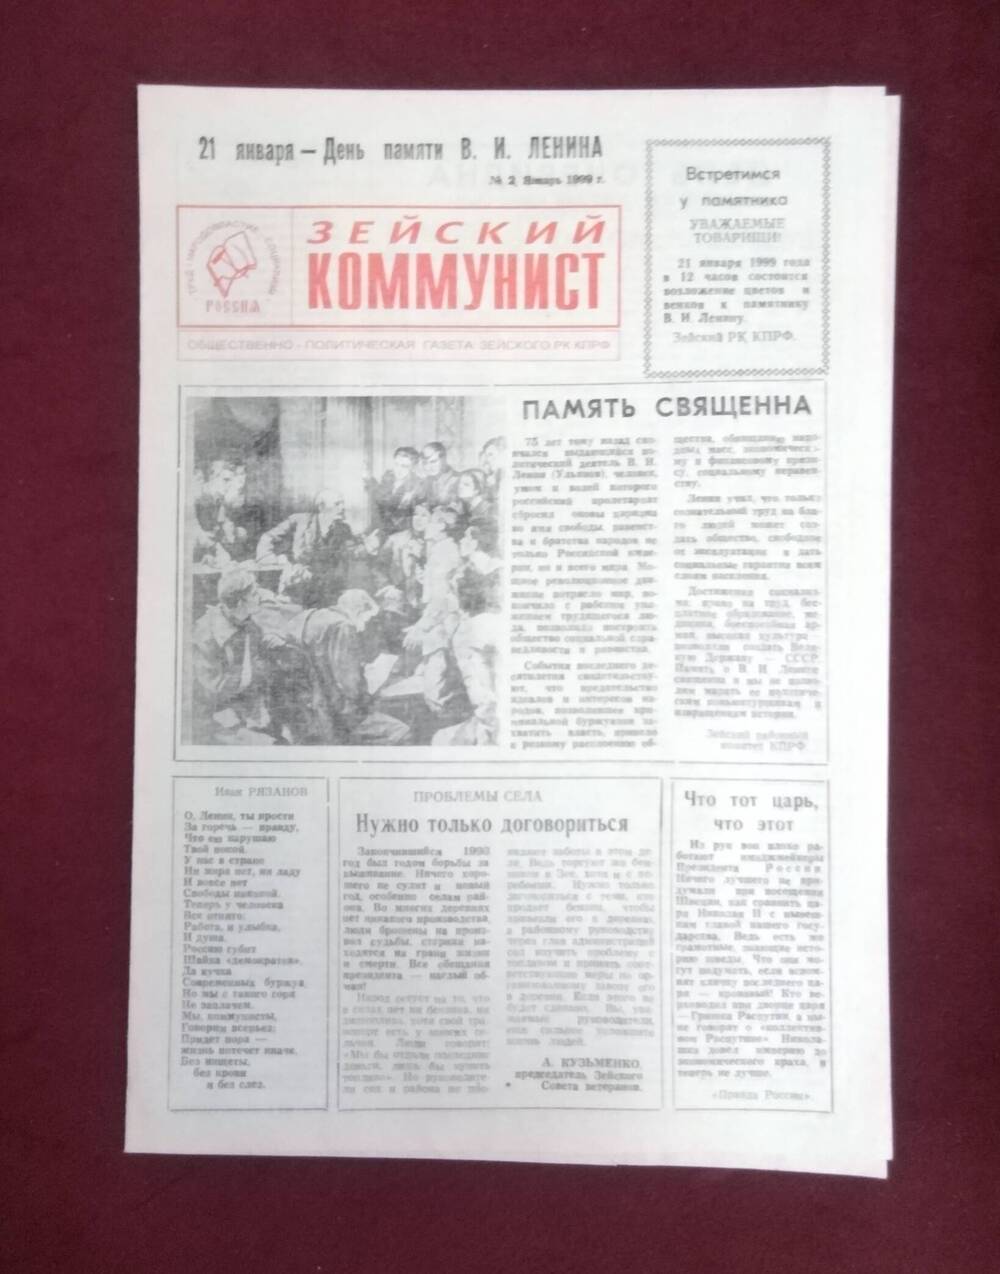 Газета Зейский коммунист № 2, январь 1999 года  публикацией В. Монастырева  Григорию Федосееву - 100 лет